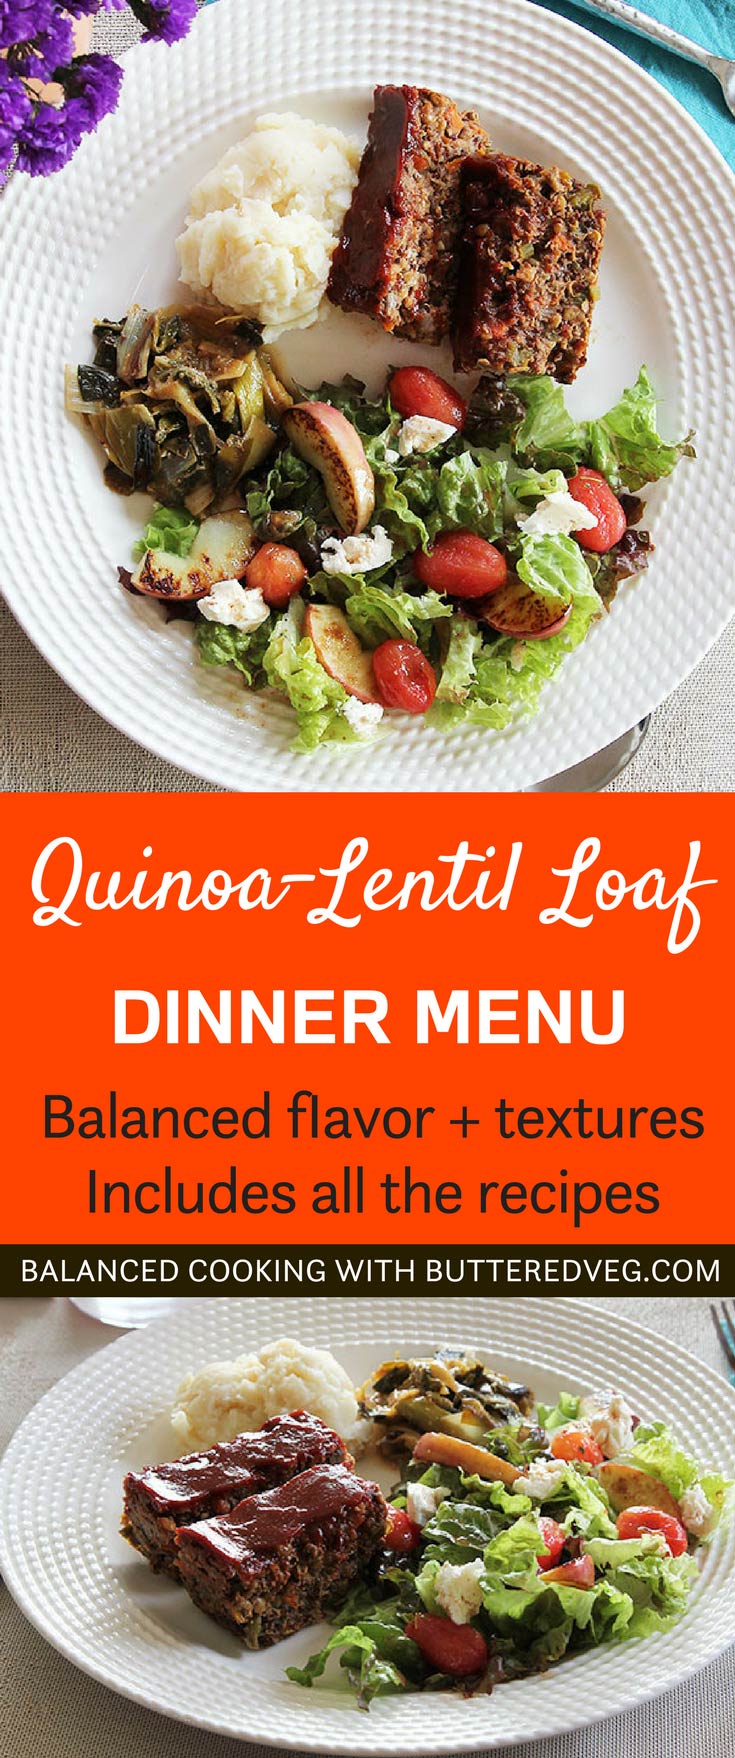 Quinoa-Lentil Loaf Dinner Menu: With Mashed Potato, Braised Greens & Salad